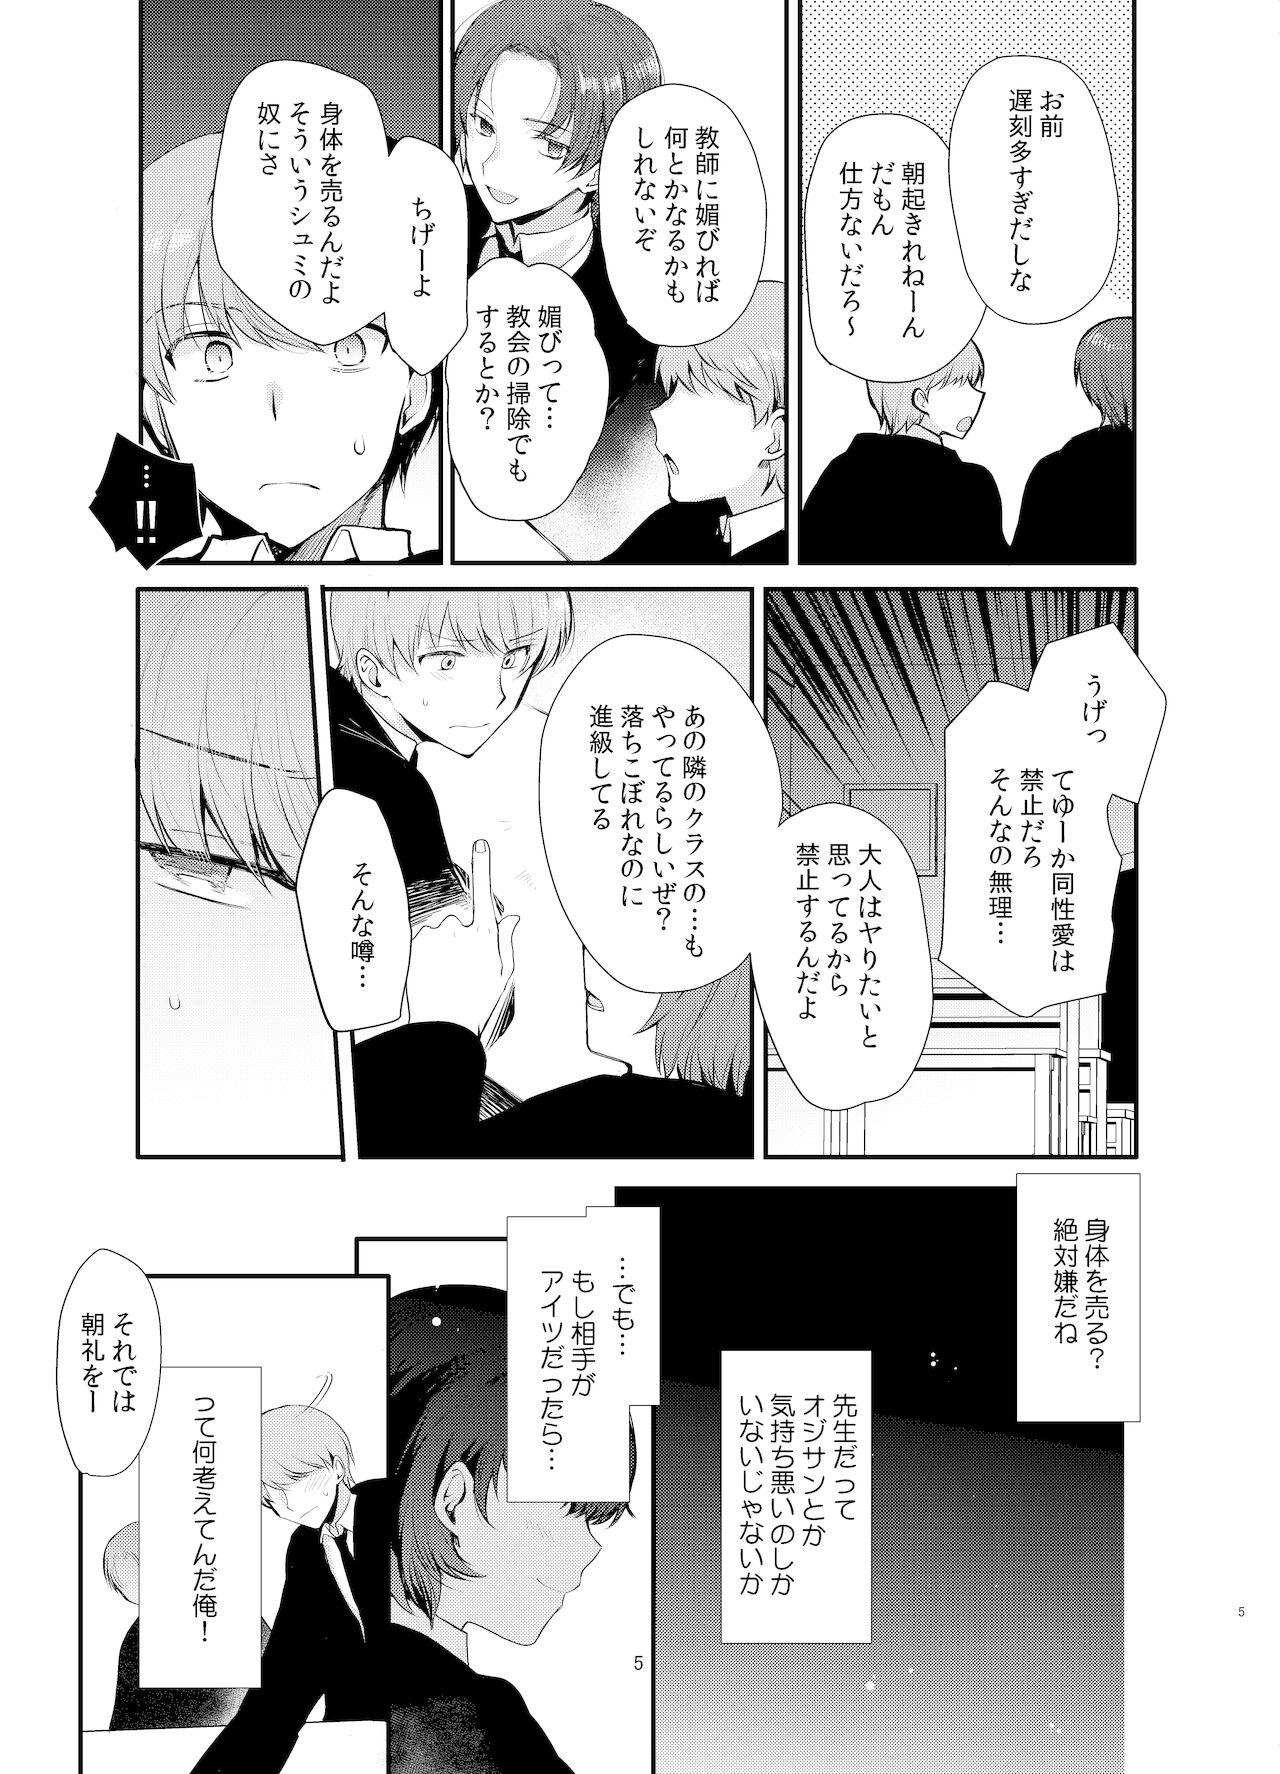 Pack 変態淫紋2 神学校男の娘教会催 - Original Morrita - Page 4